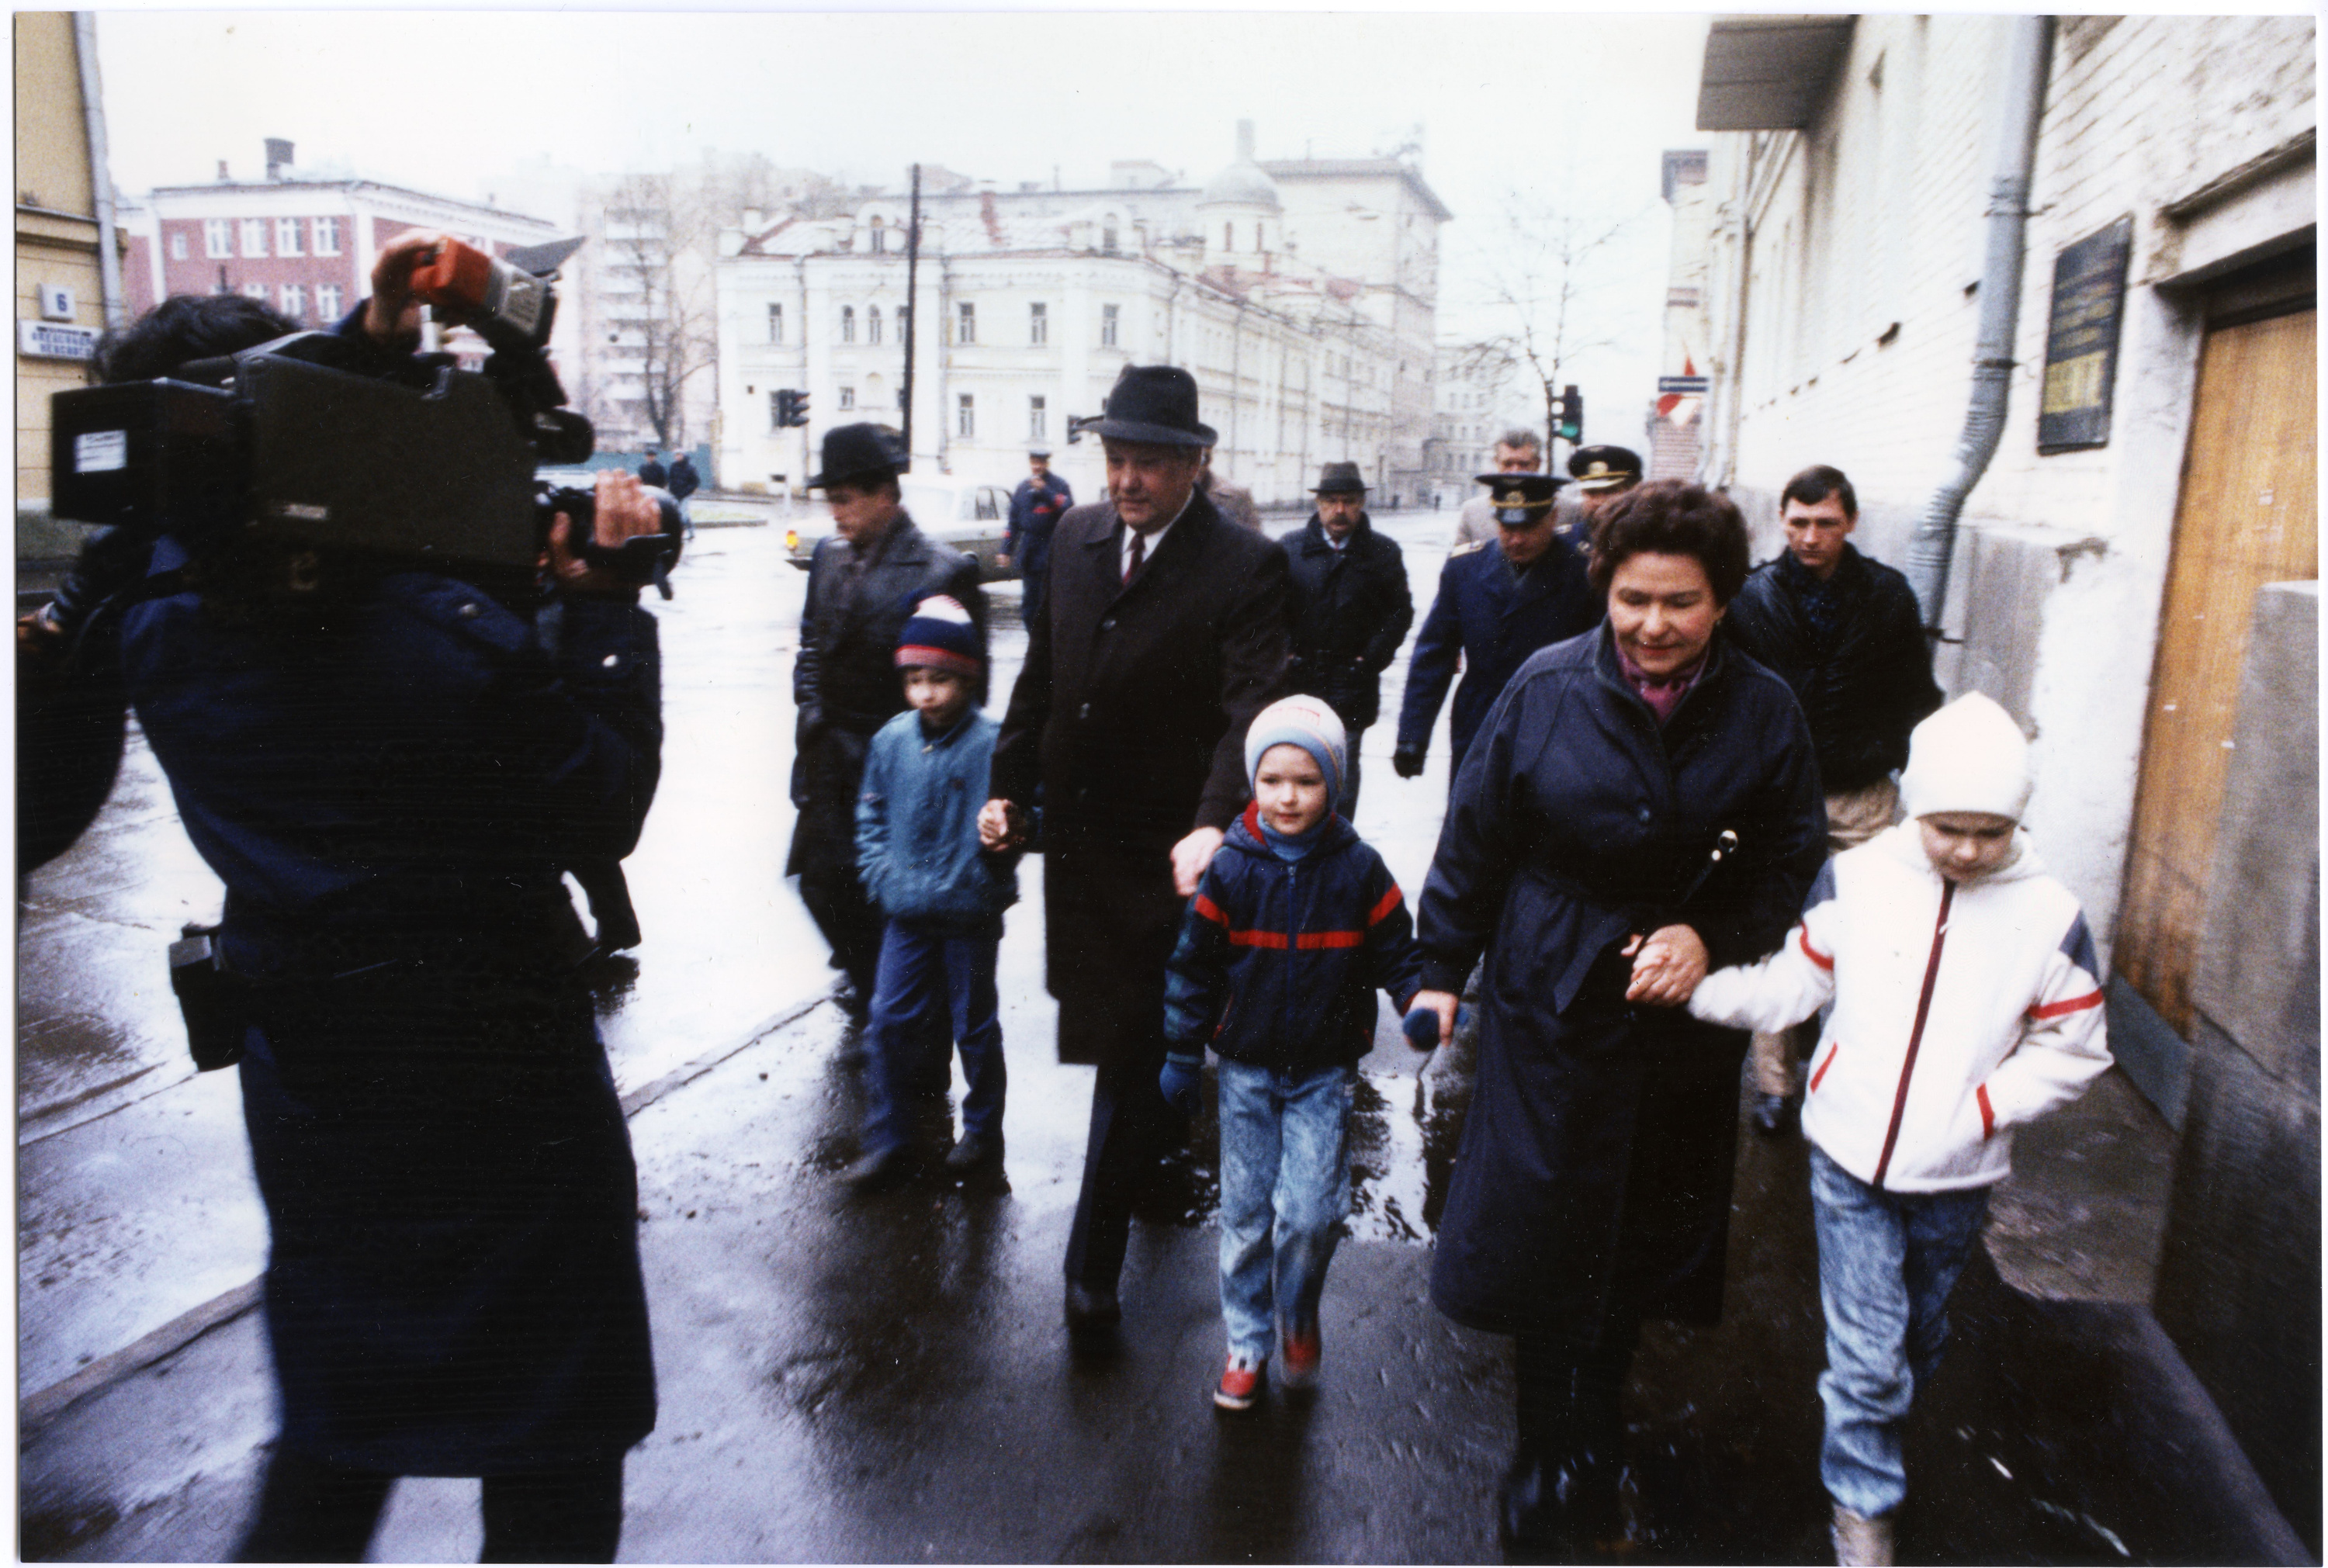 Б. Н. Ельцин и Н. И. Ельцина с семьей по пути на избирательный участок на выборы народных депутатов СССР. Москва. Фото 26 марта 1989 г.